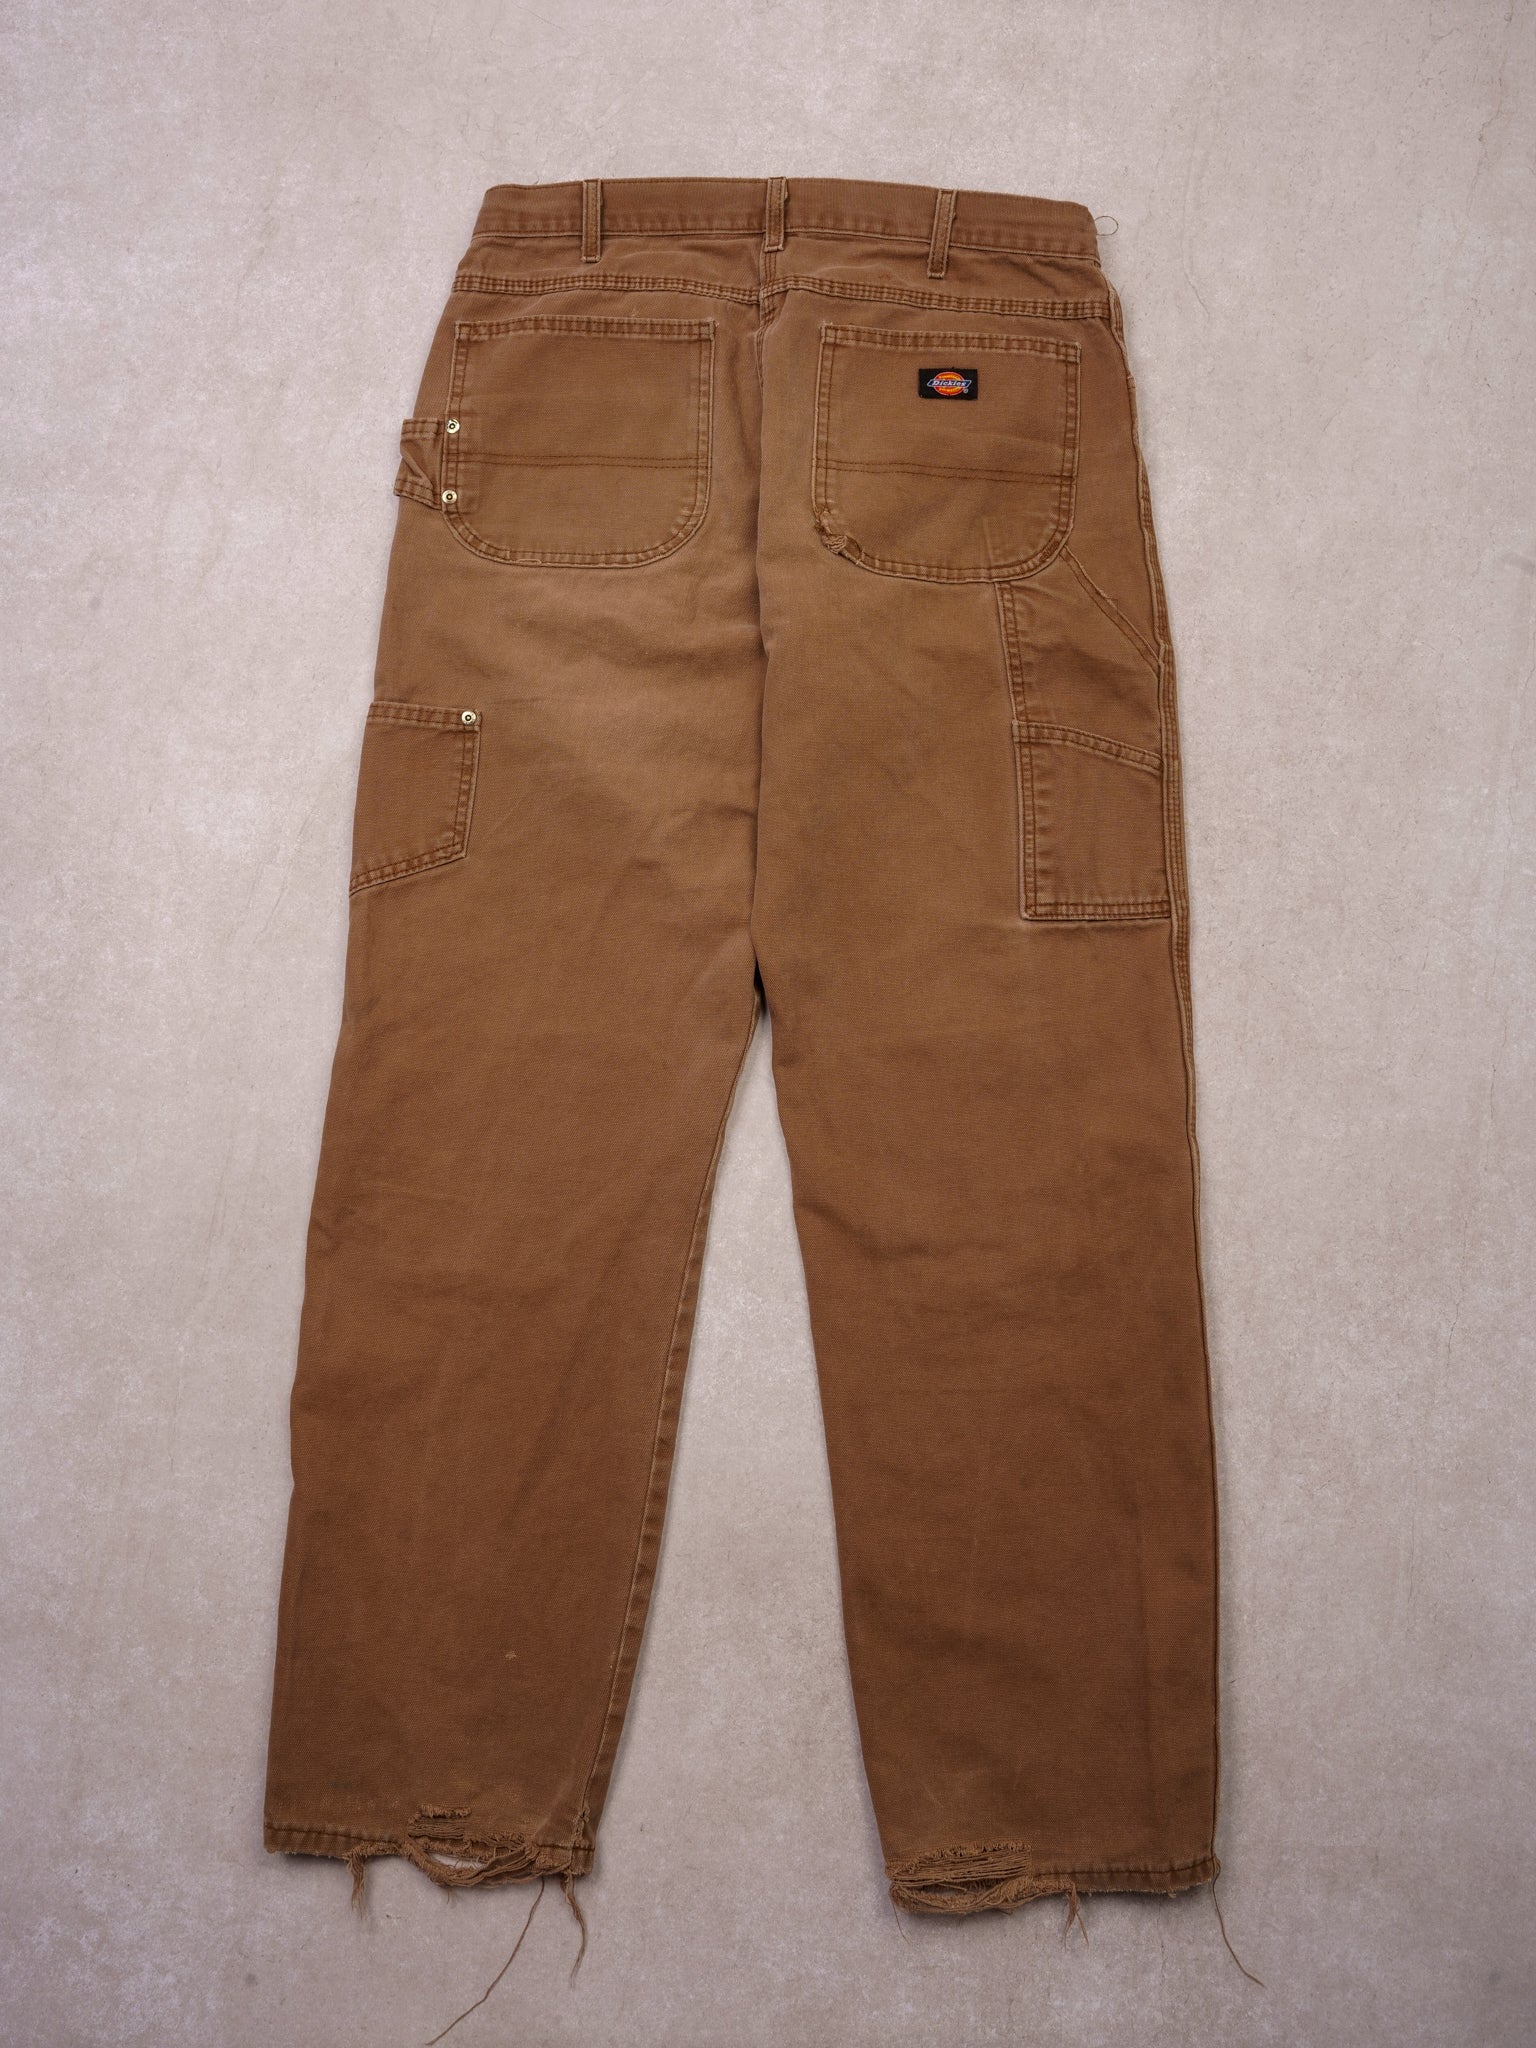 Vintage Brown Dickies Distressed Carpenter Pants (32x33)